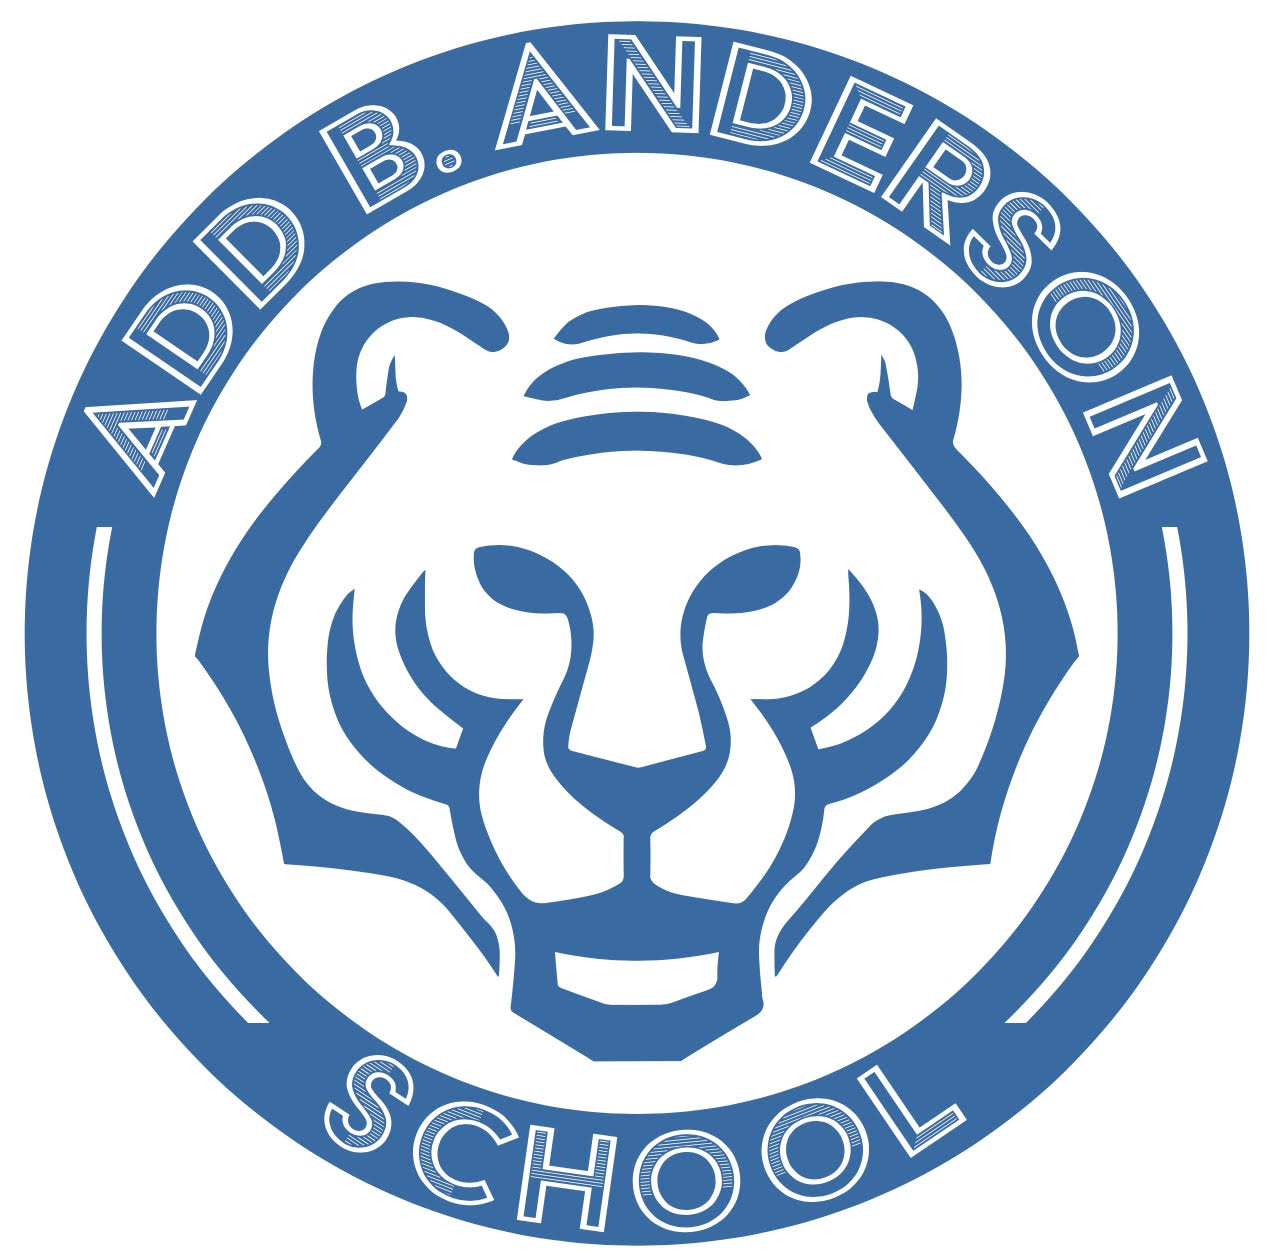 Add B. Anderson School